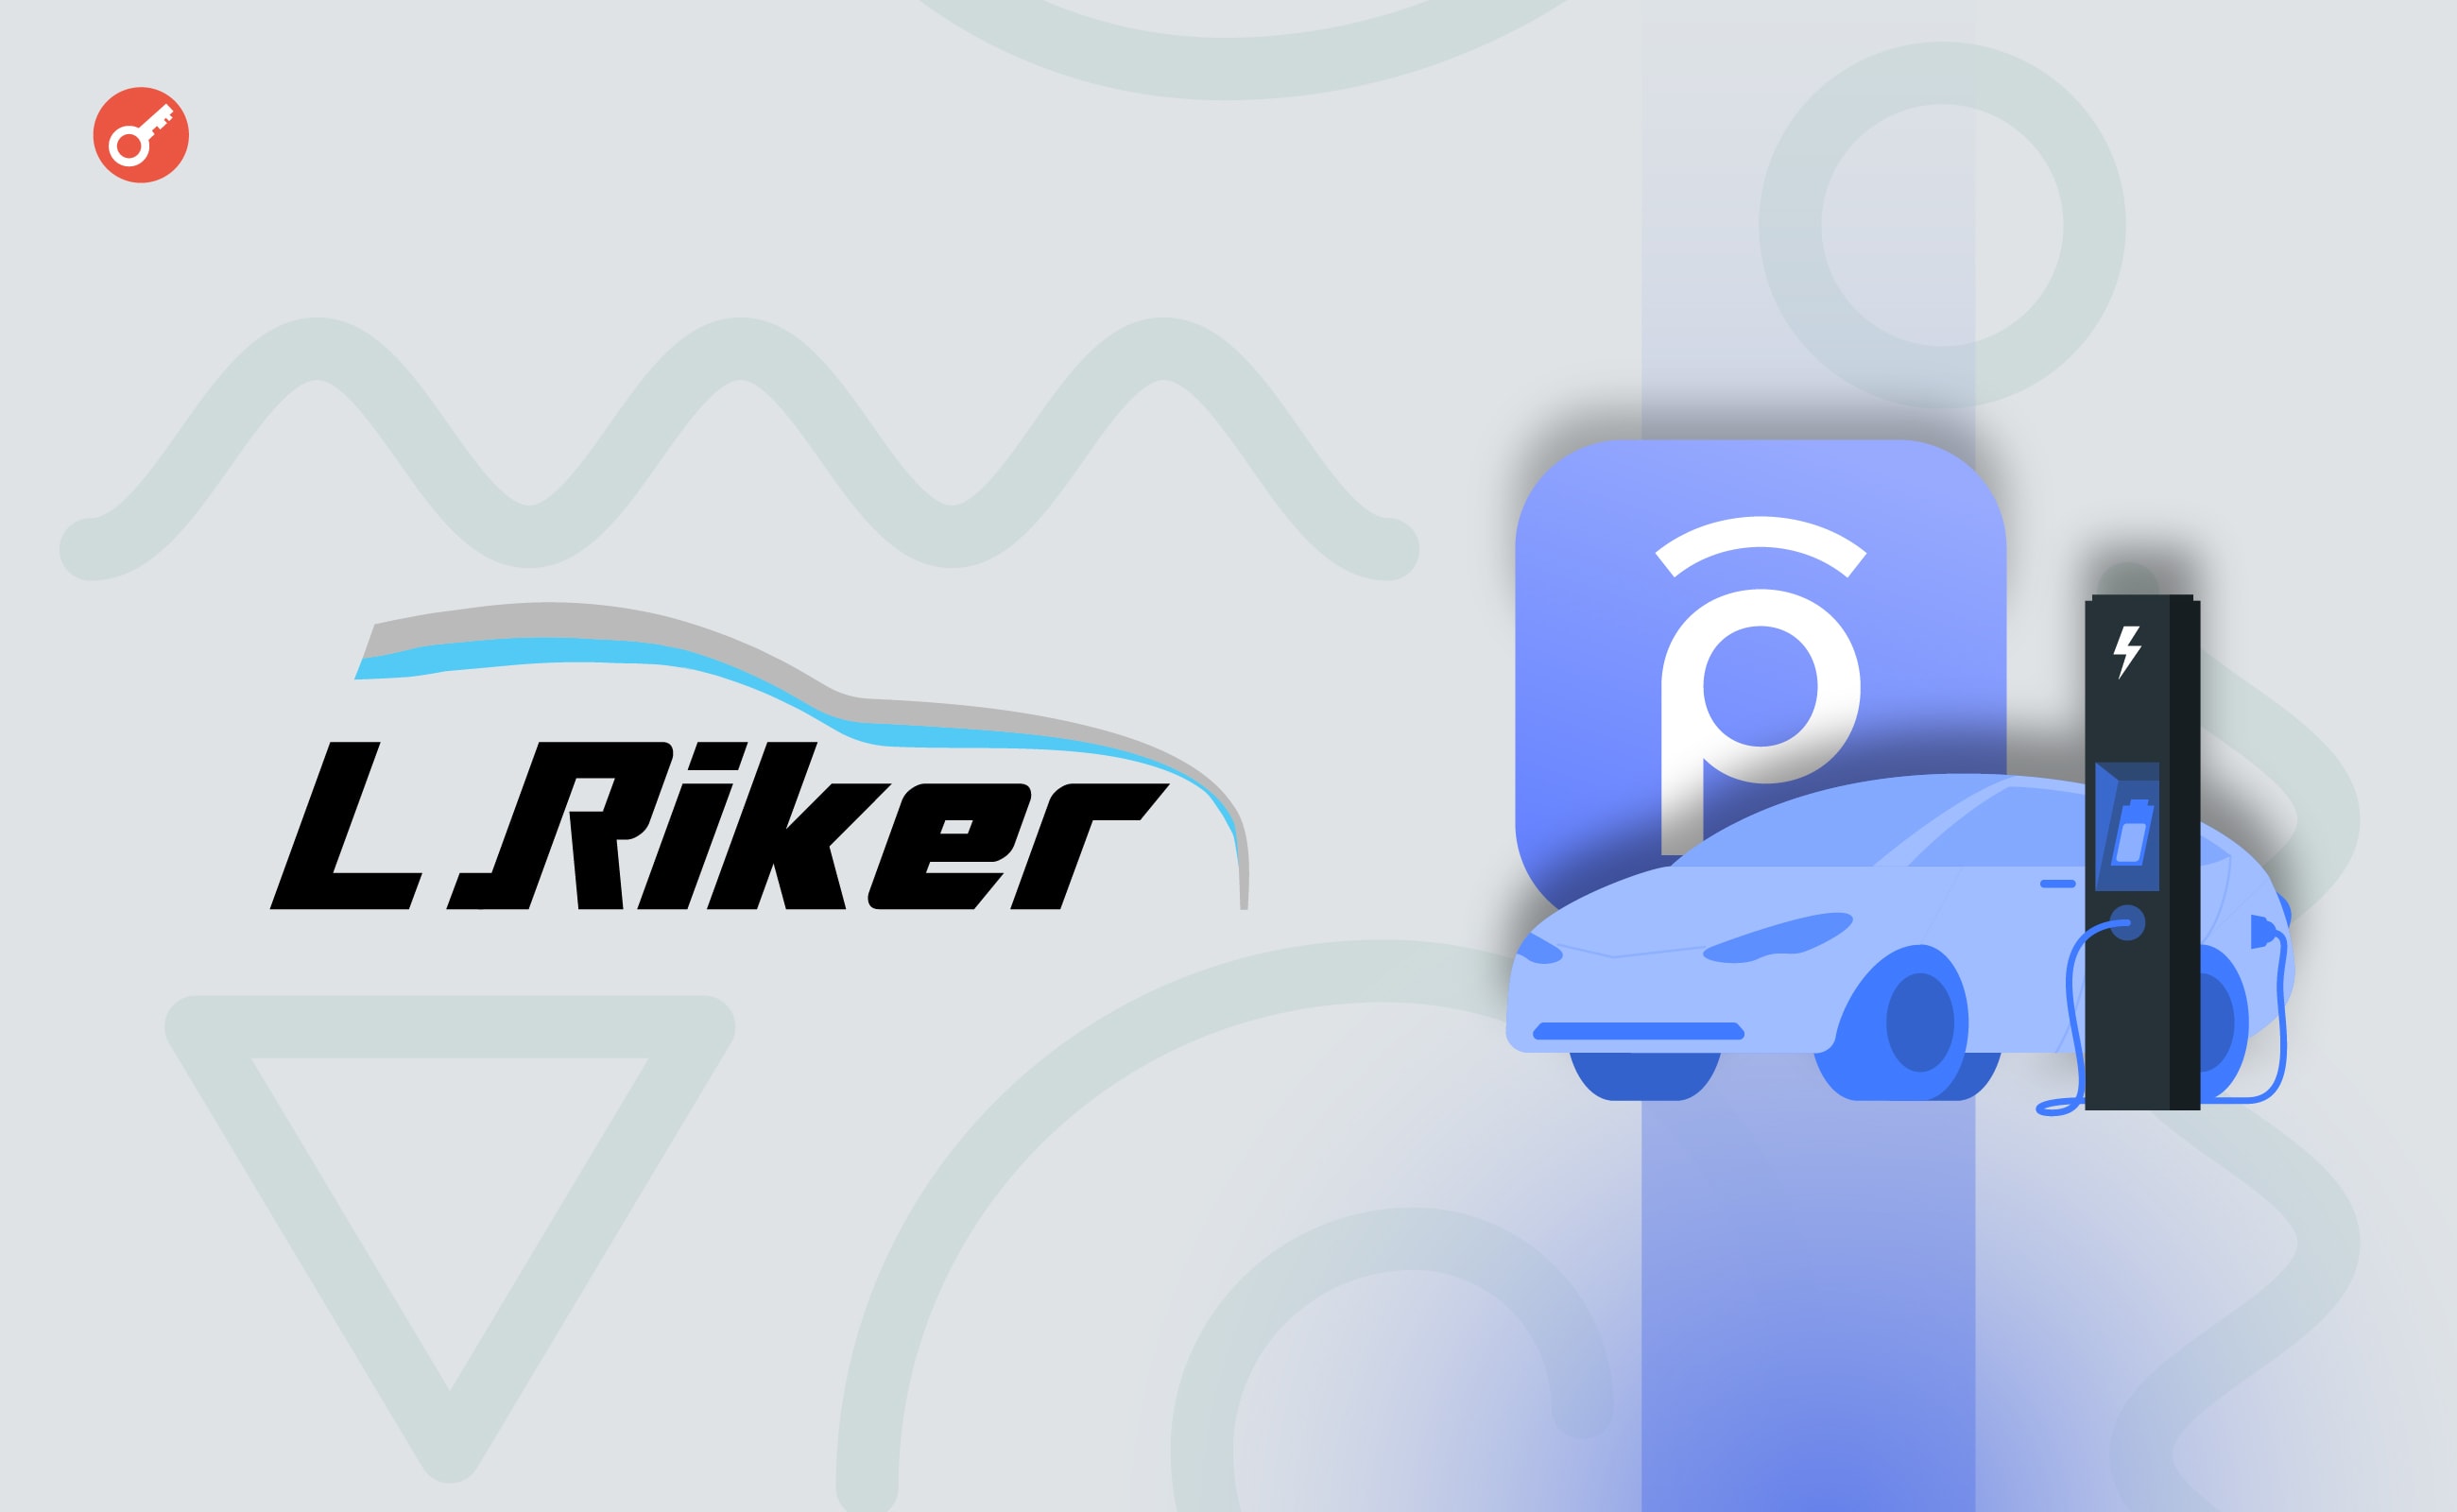 Електрокар за криптовалюту: Whitepay уклала партнерство з Riker. Головний колаж новини.